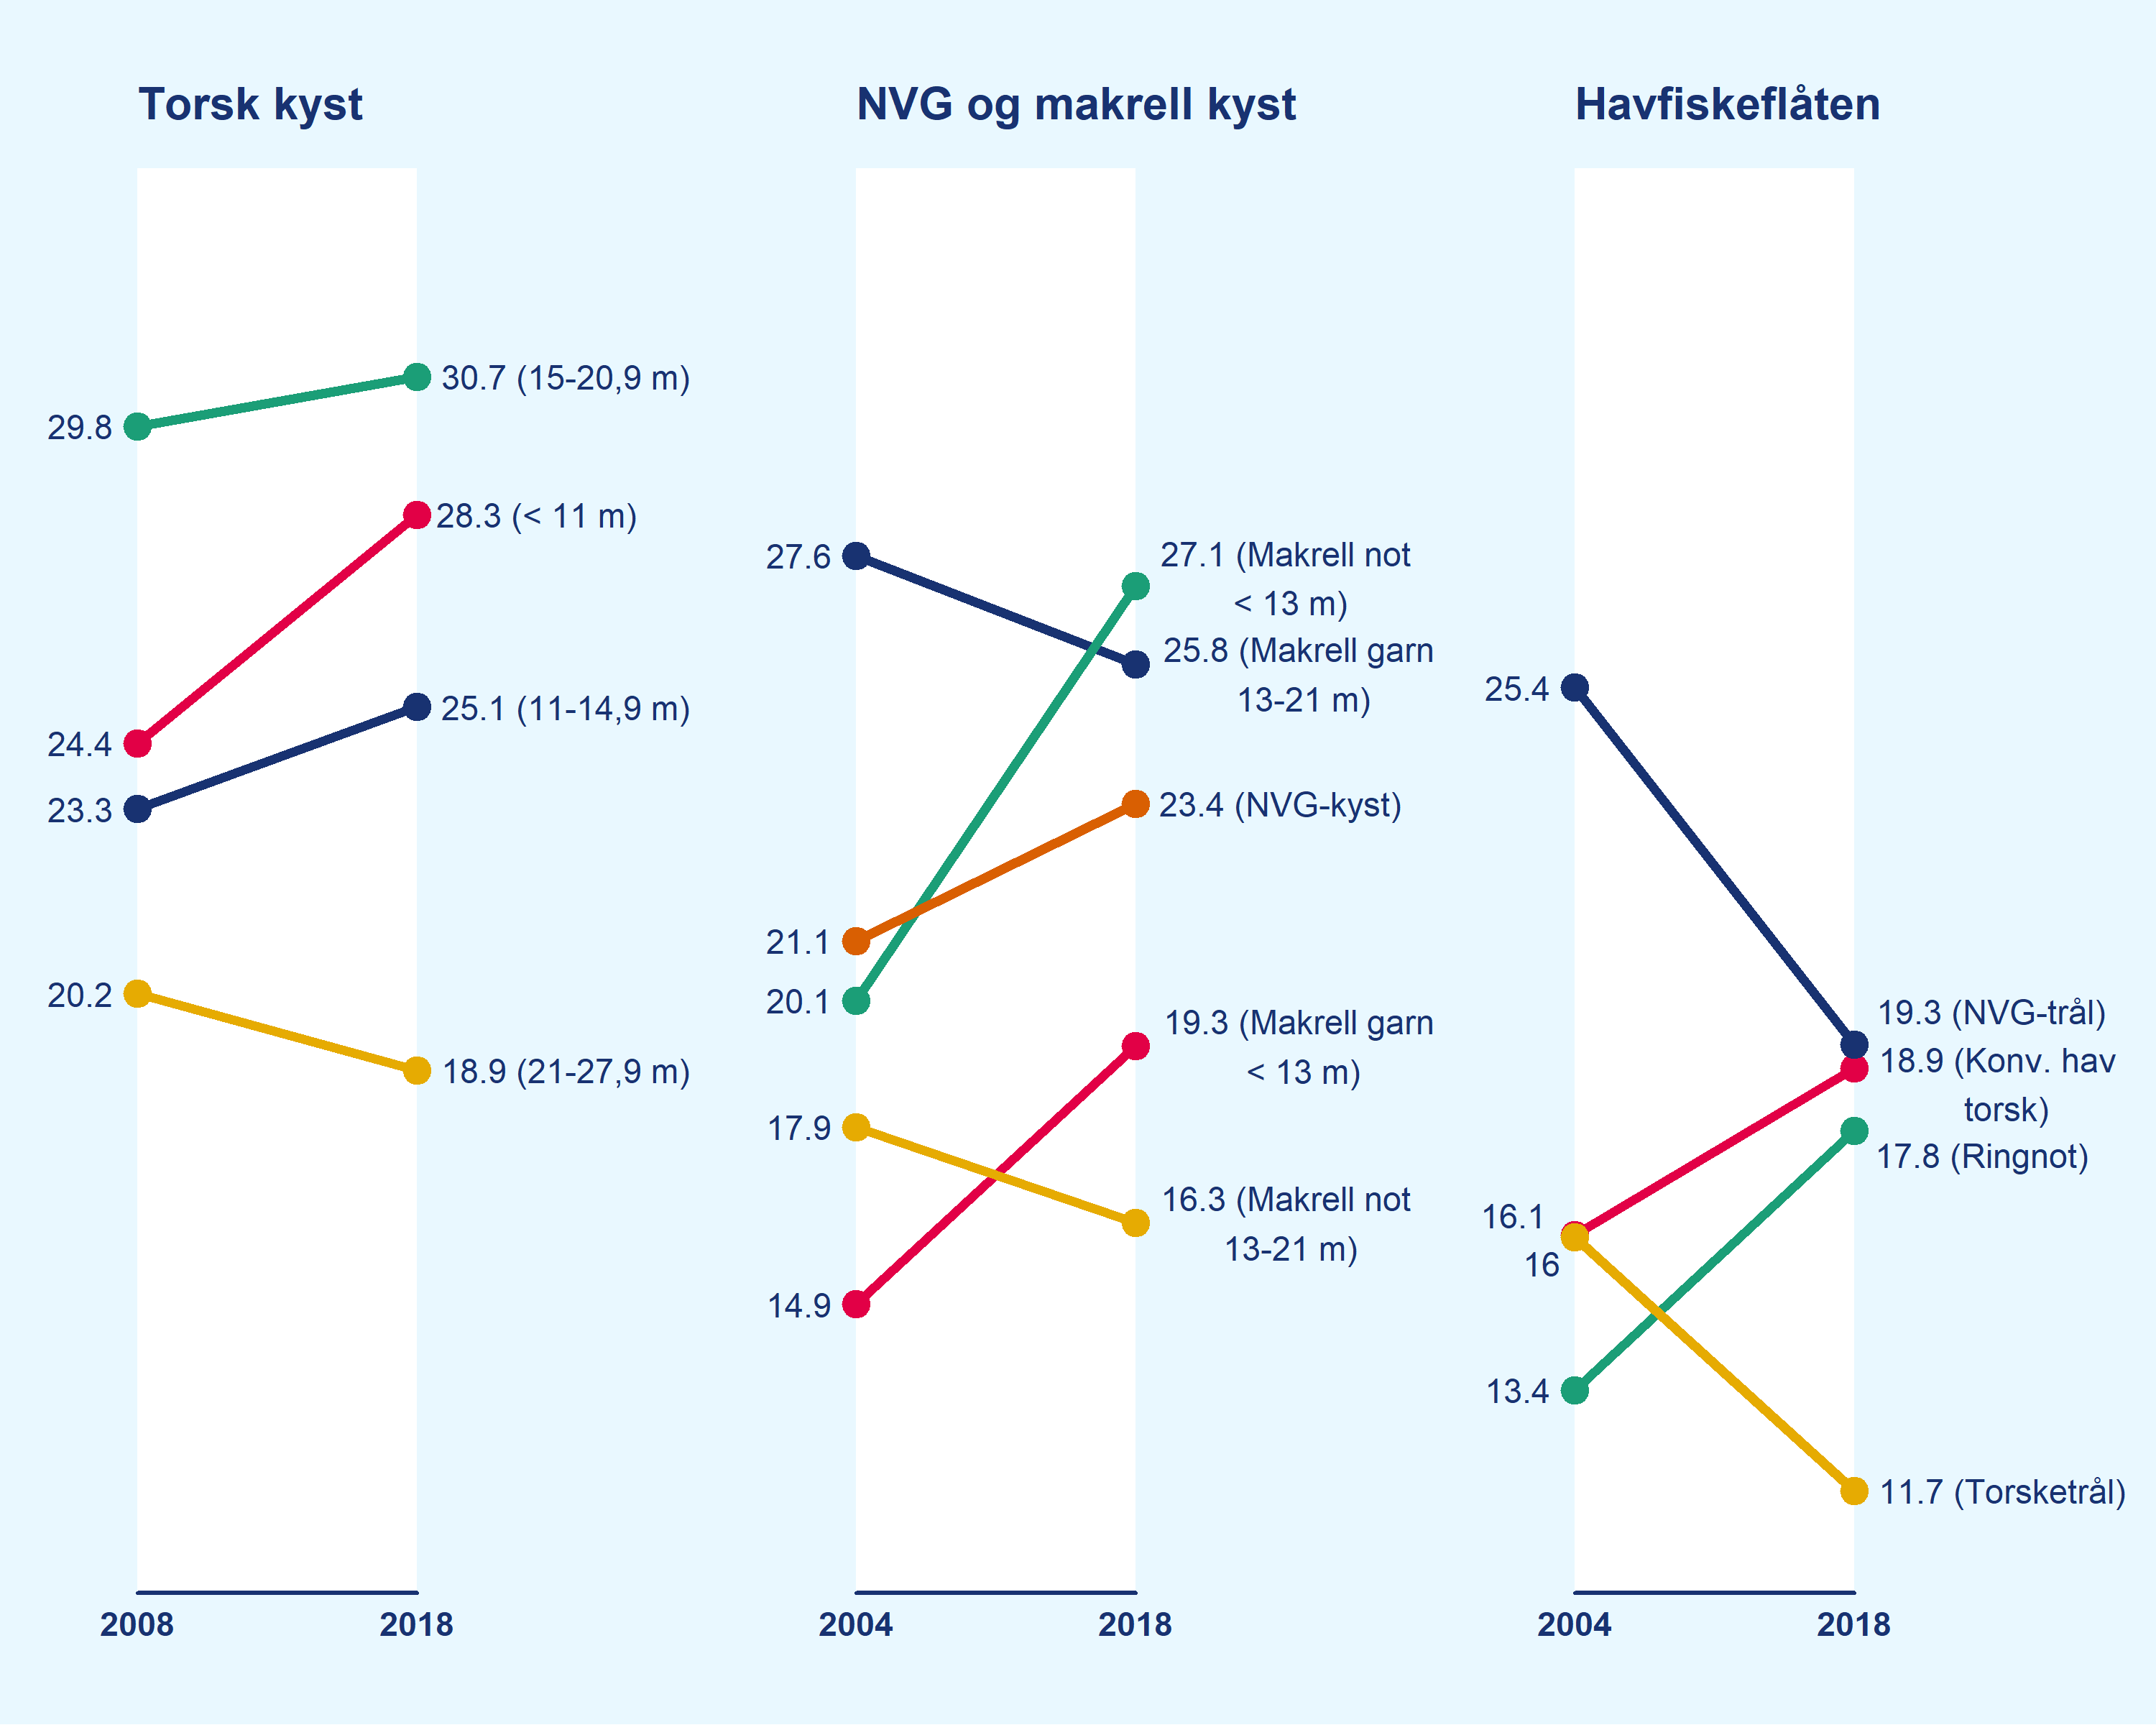 Figuren viser gjennomsnittlig fartøyalder i de ulike gruppene i havfiskeflåten og kystflåten i perioden 2004 til 2018. I enkelte grupper er den gjennomsnittlige fartøyalderen redusert, mens den har økt i andre grupper.